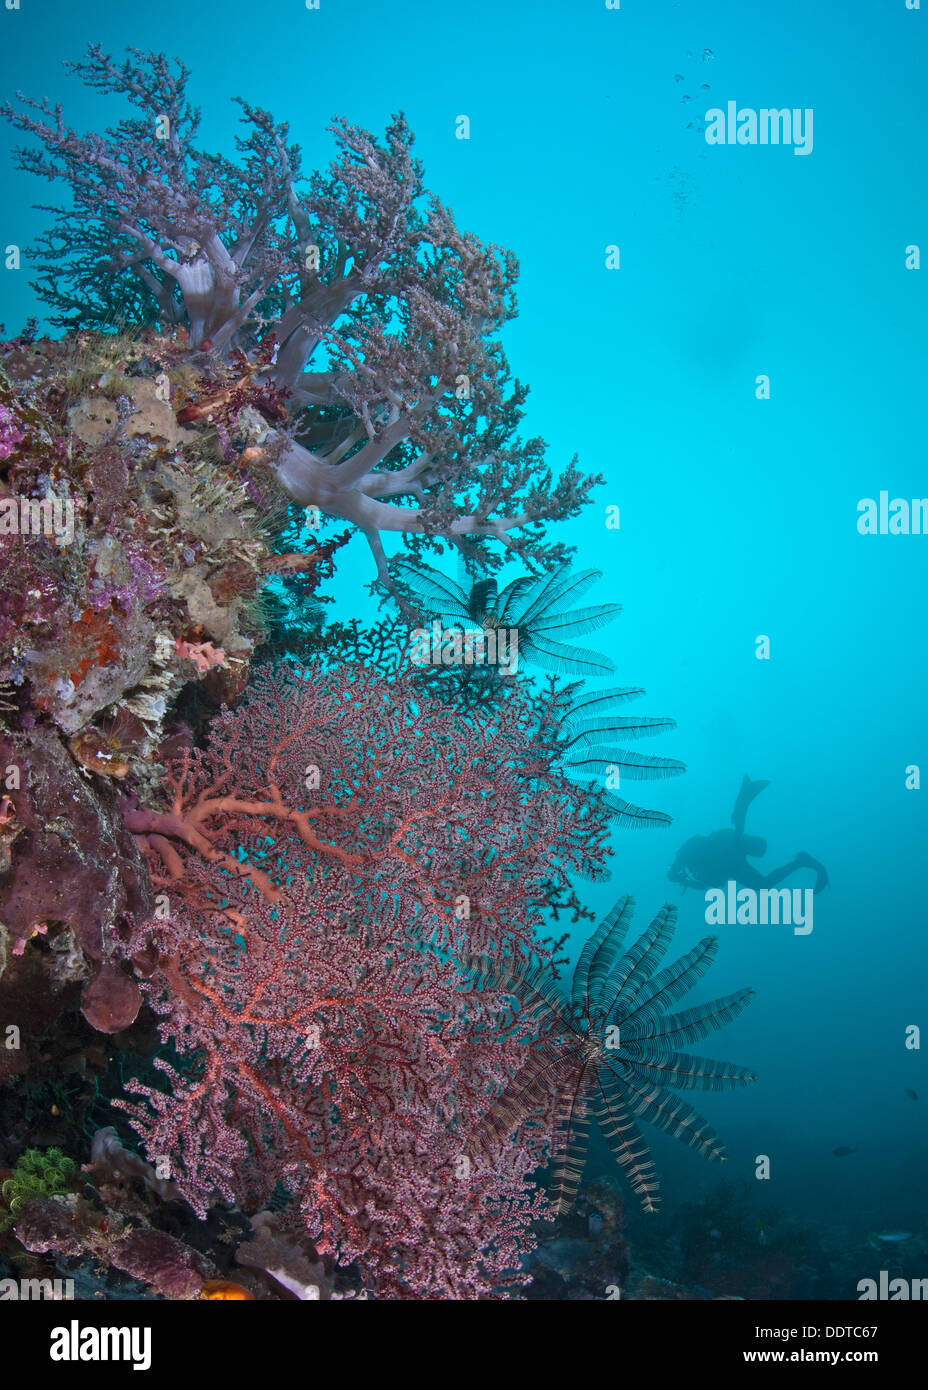 Close-Fokus Weitwinkel von roten Gorgonien und lila weichen Korallenbaum Gegenlicht durch Aqua blau Wasser Taucher Silhouette. Raja Ampat, Indonesien Stockfoto